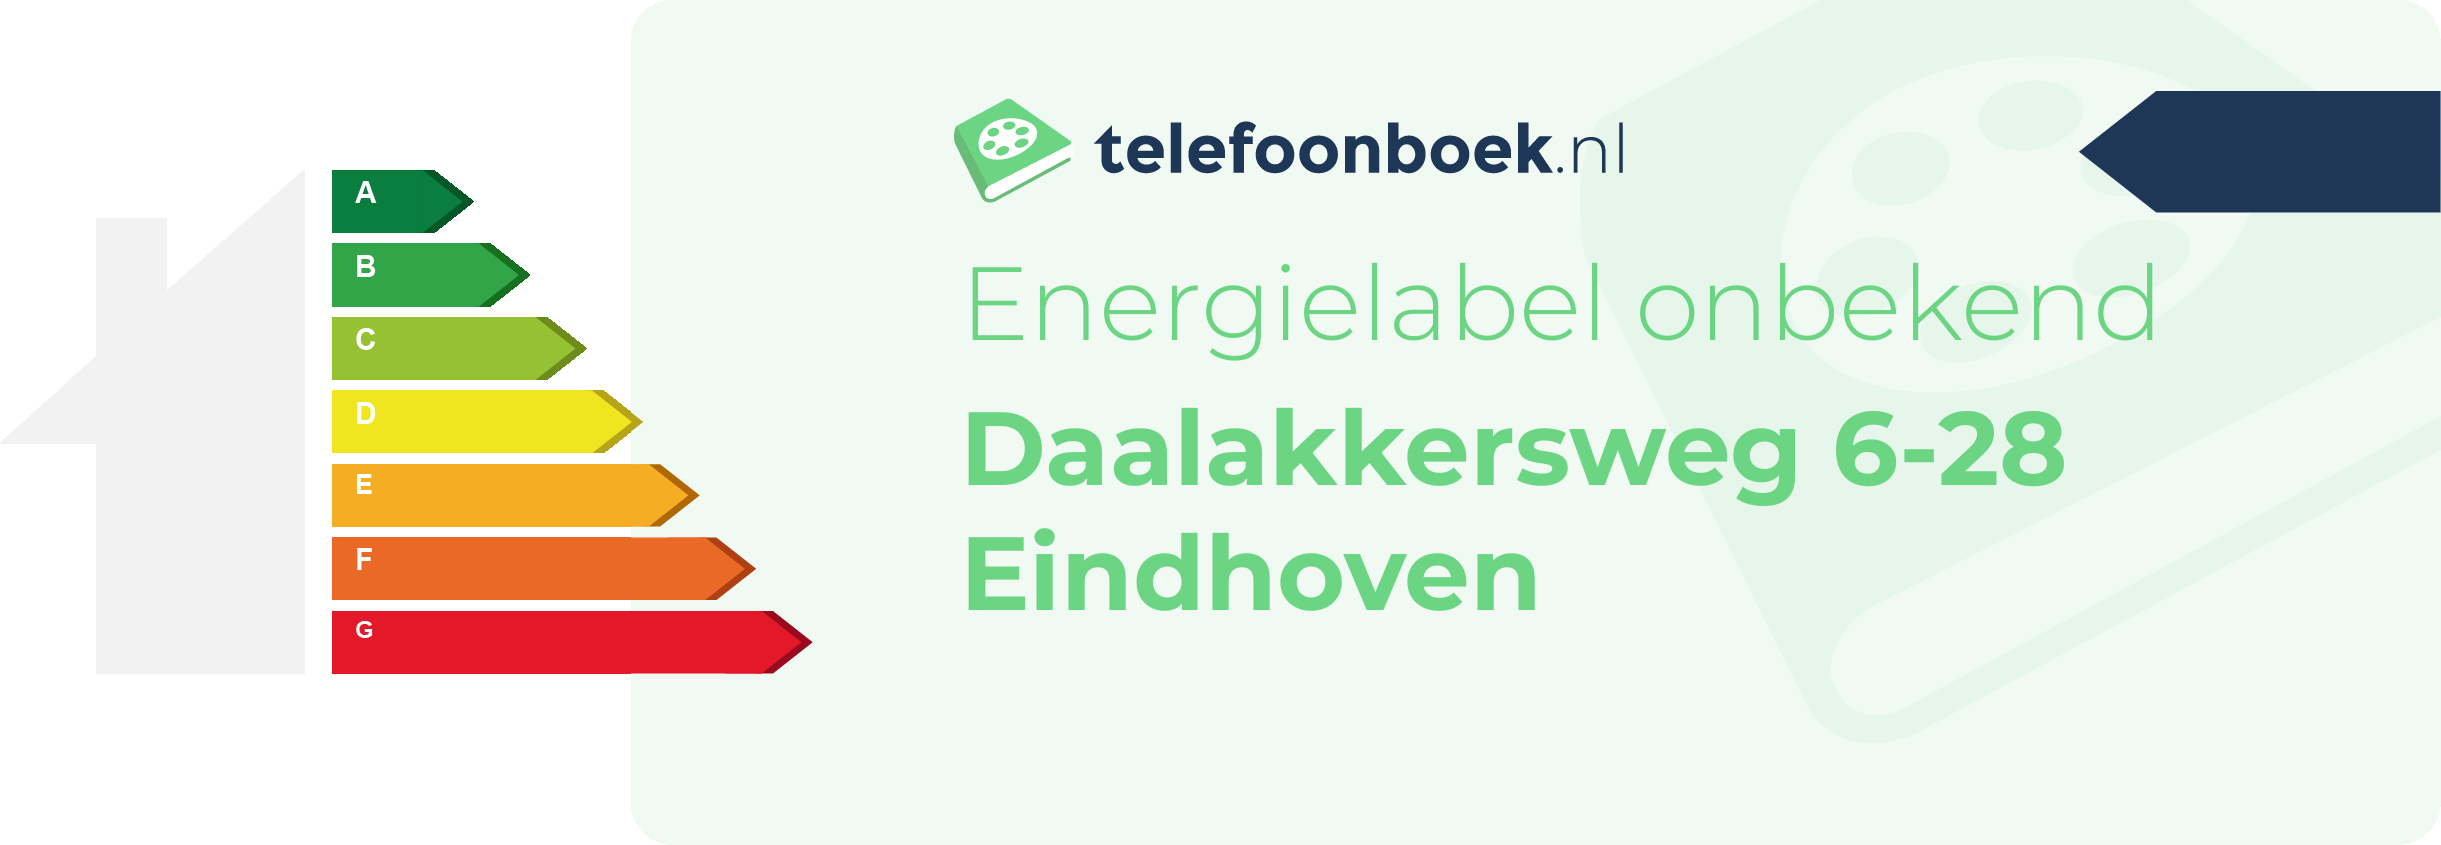 Energielabel Daalakkersweg 6-28 Eindhoven